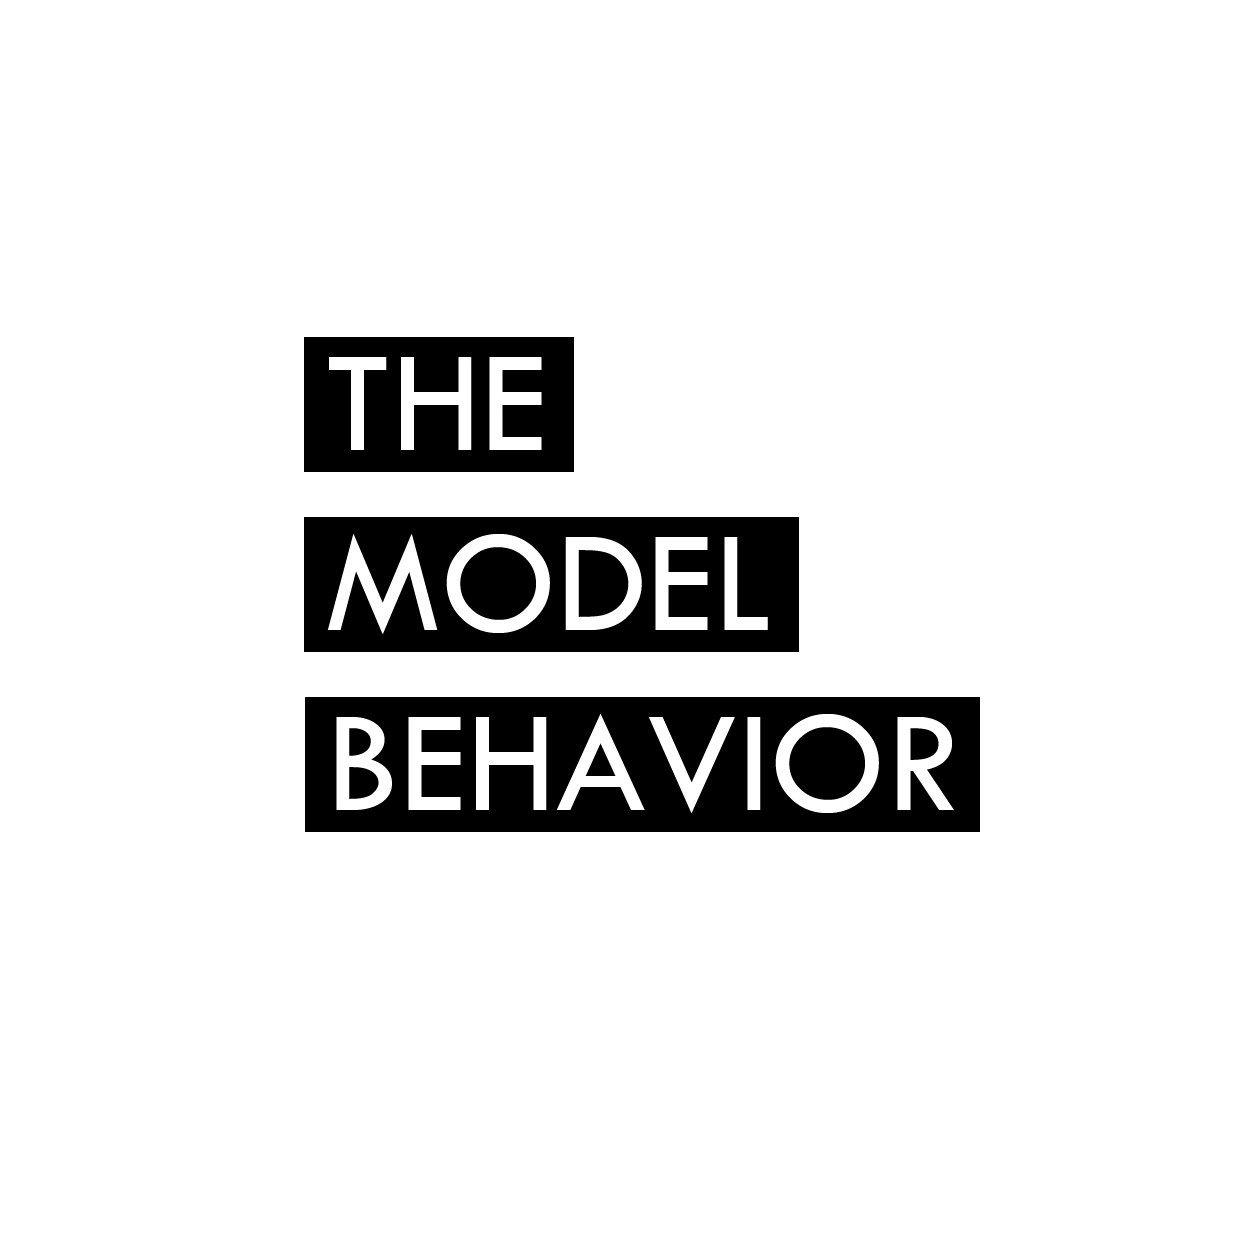 Behavior Logo - The Model Behavior